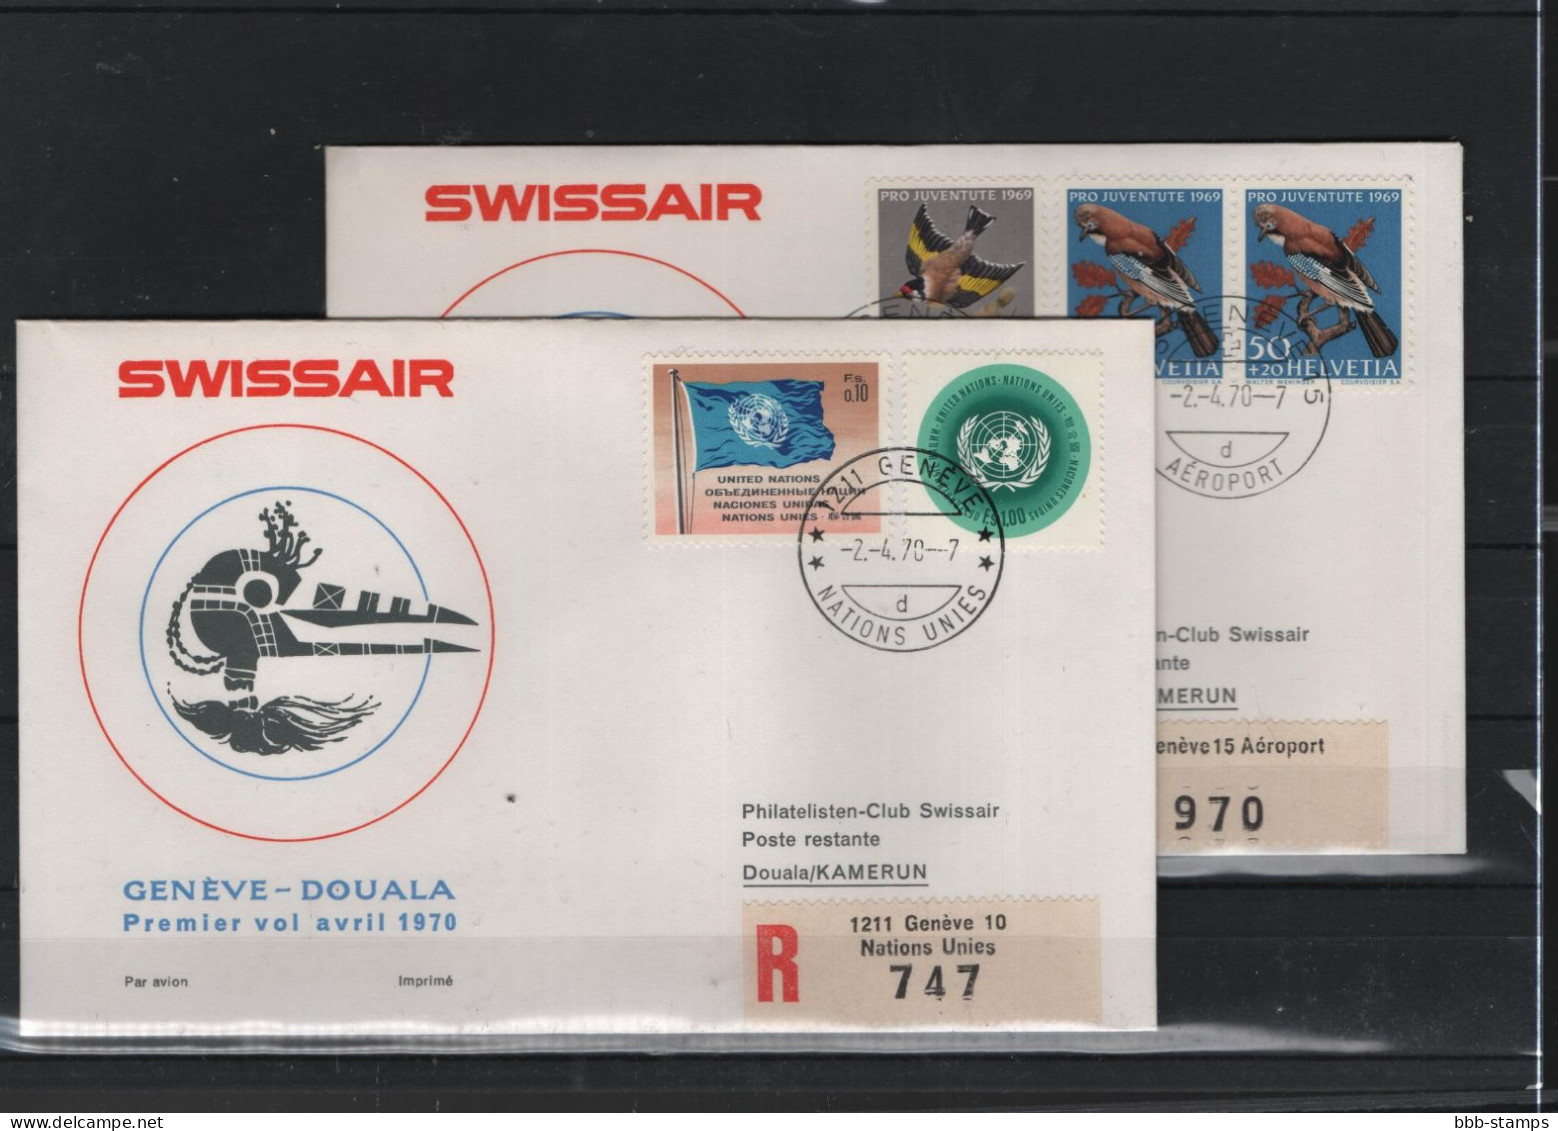 Schweiz Luftpost FFC Swissair 2.4.1970 Genf - Duala VV - First Flight Covers